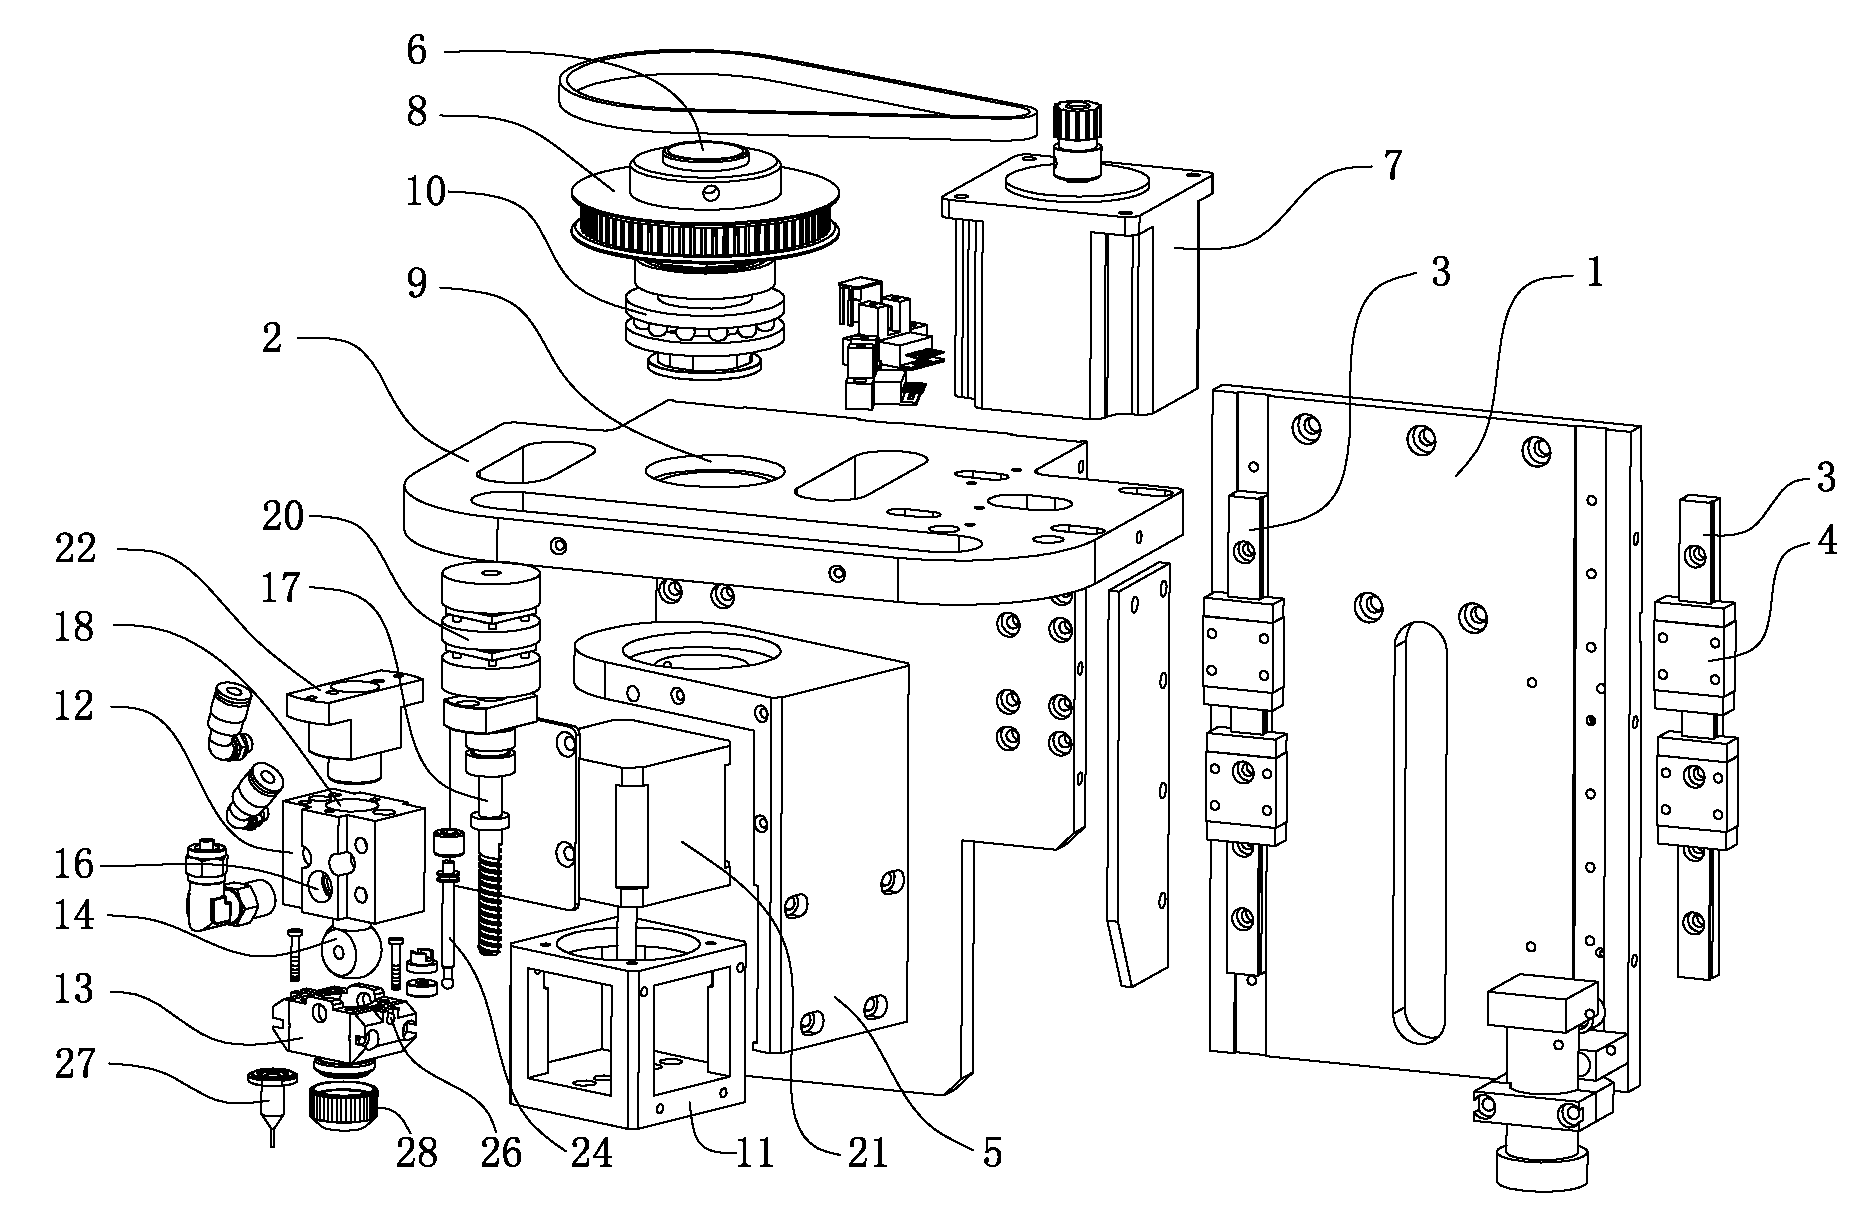 Head part mechanism of glue dispenser